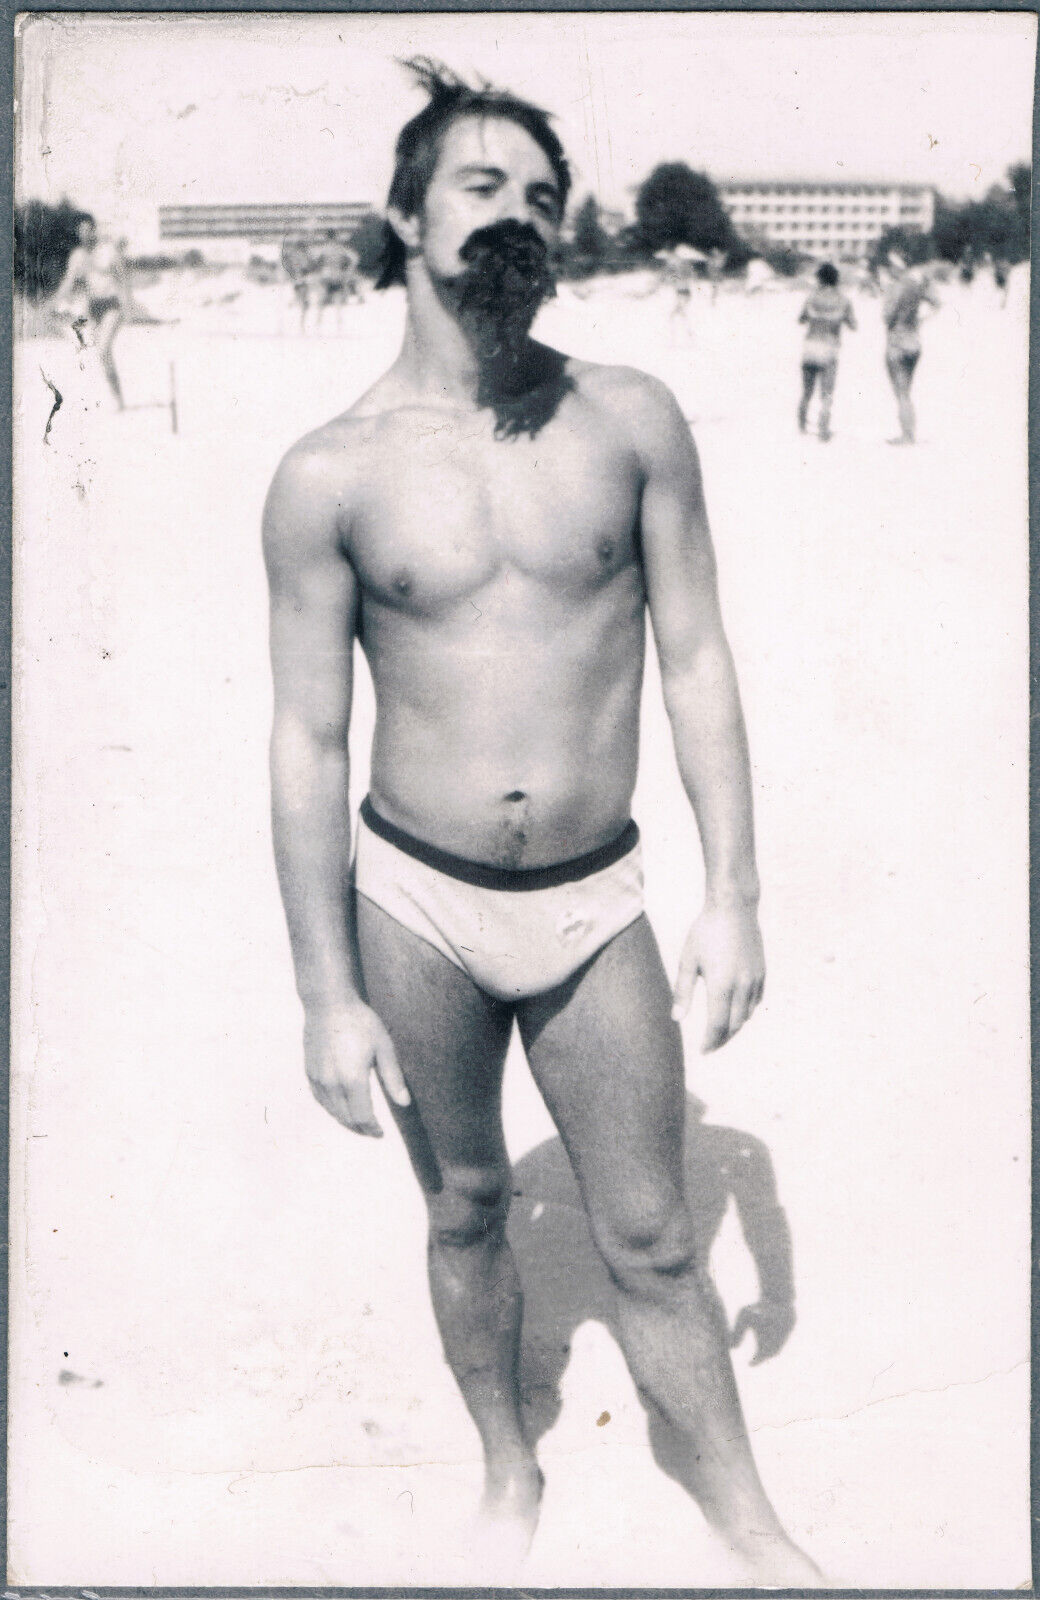 Beefcake Bulge Shirtless Man Trunks Gay Interest Vintage Snapshot Photo